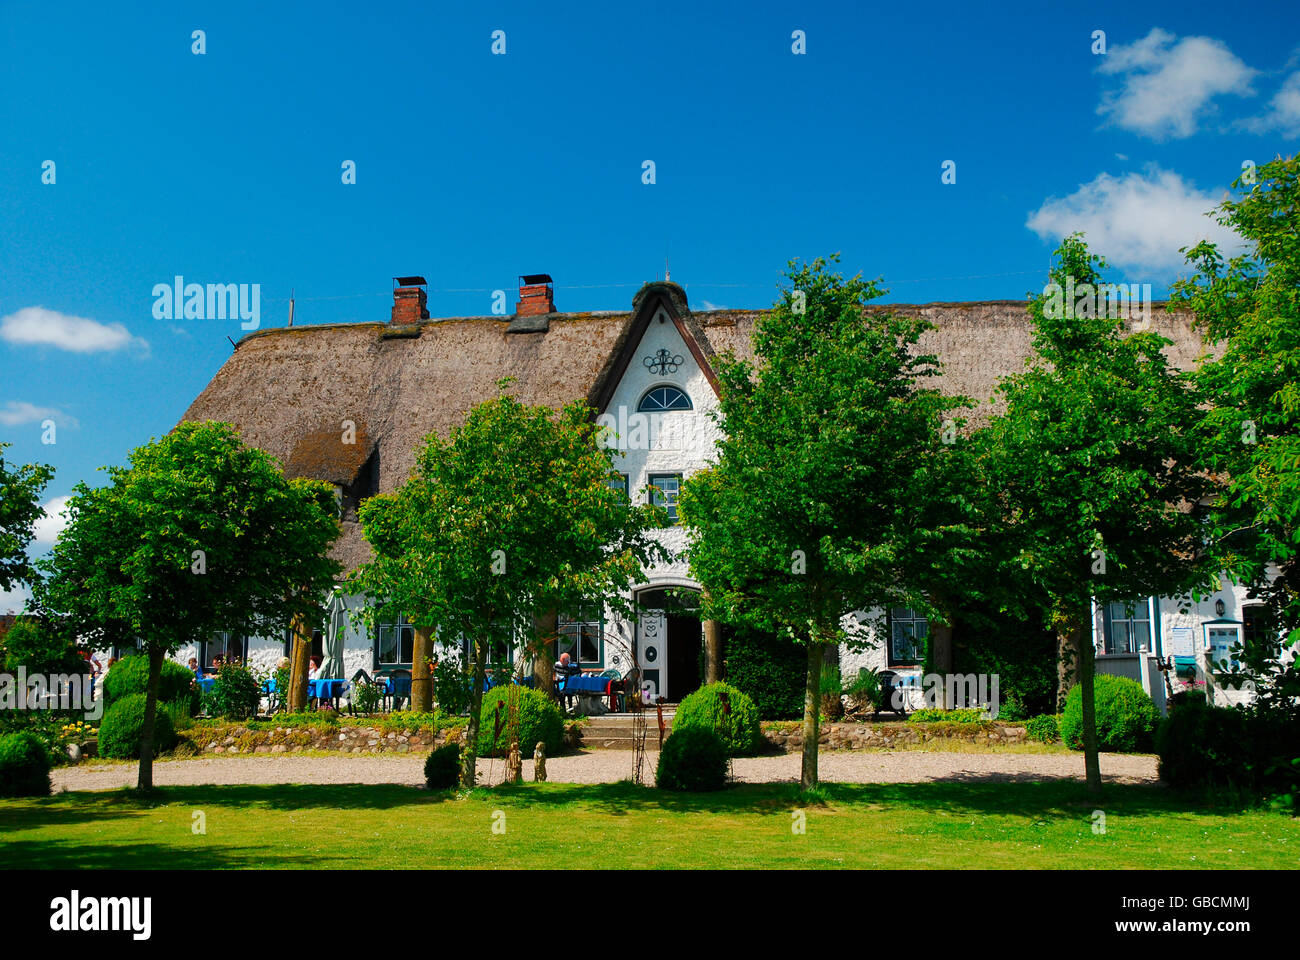 Haus, Gaststaette, Pharisaer, Nordstrand, Nordfriesland, Schleswig-Holstein, Allemagne Banque D'Images